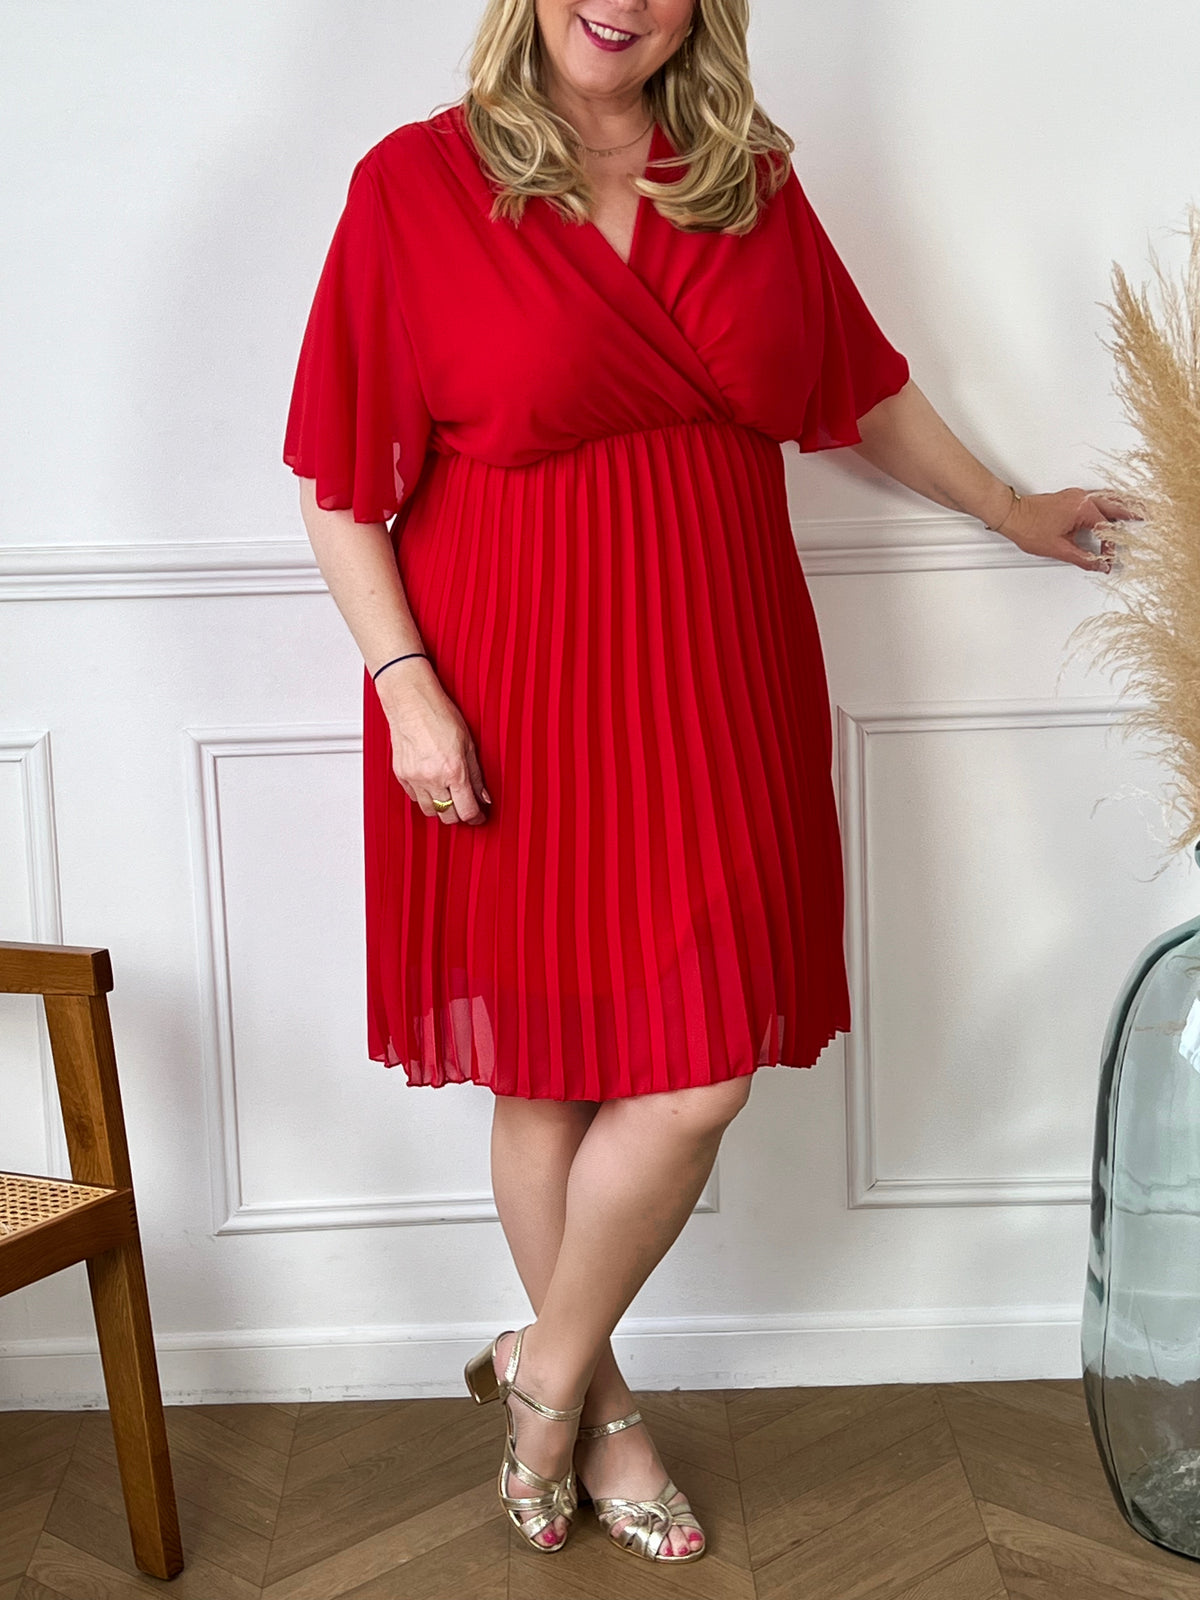 La robe courte plissée couleur rouge incarne une élégance moderne. La couleur rouge offre une nuance sexy et chic, tandis que la texture plissée ajoute une touche de mouvement et de style. Cette pièce est idéale pour les occasions décontractées ou plus habillées.